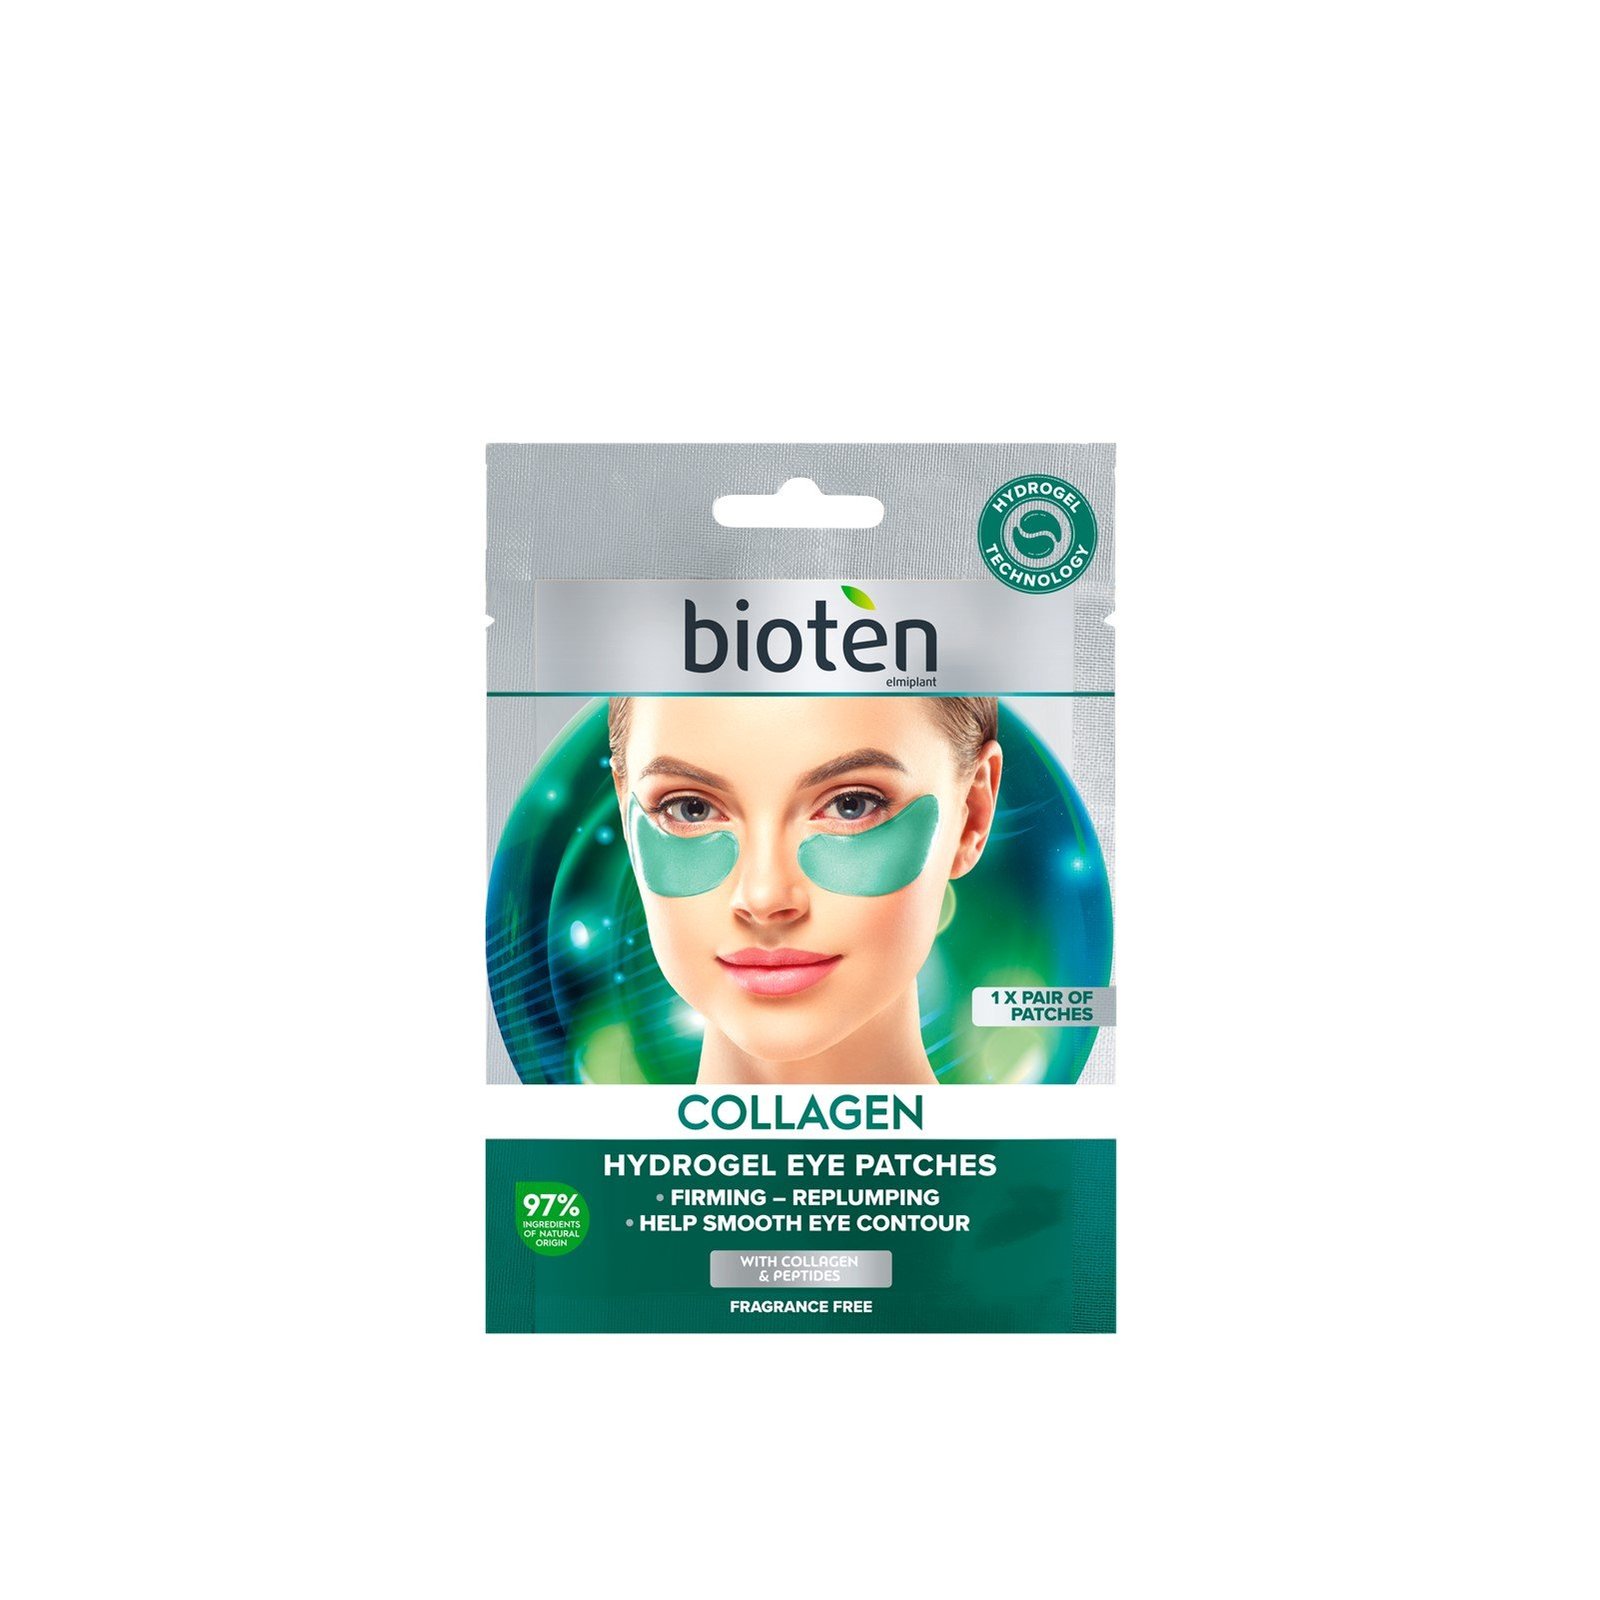 bioten Collagen Hydrogel Eye Patches x1 Pair